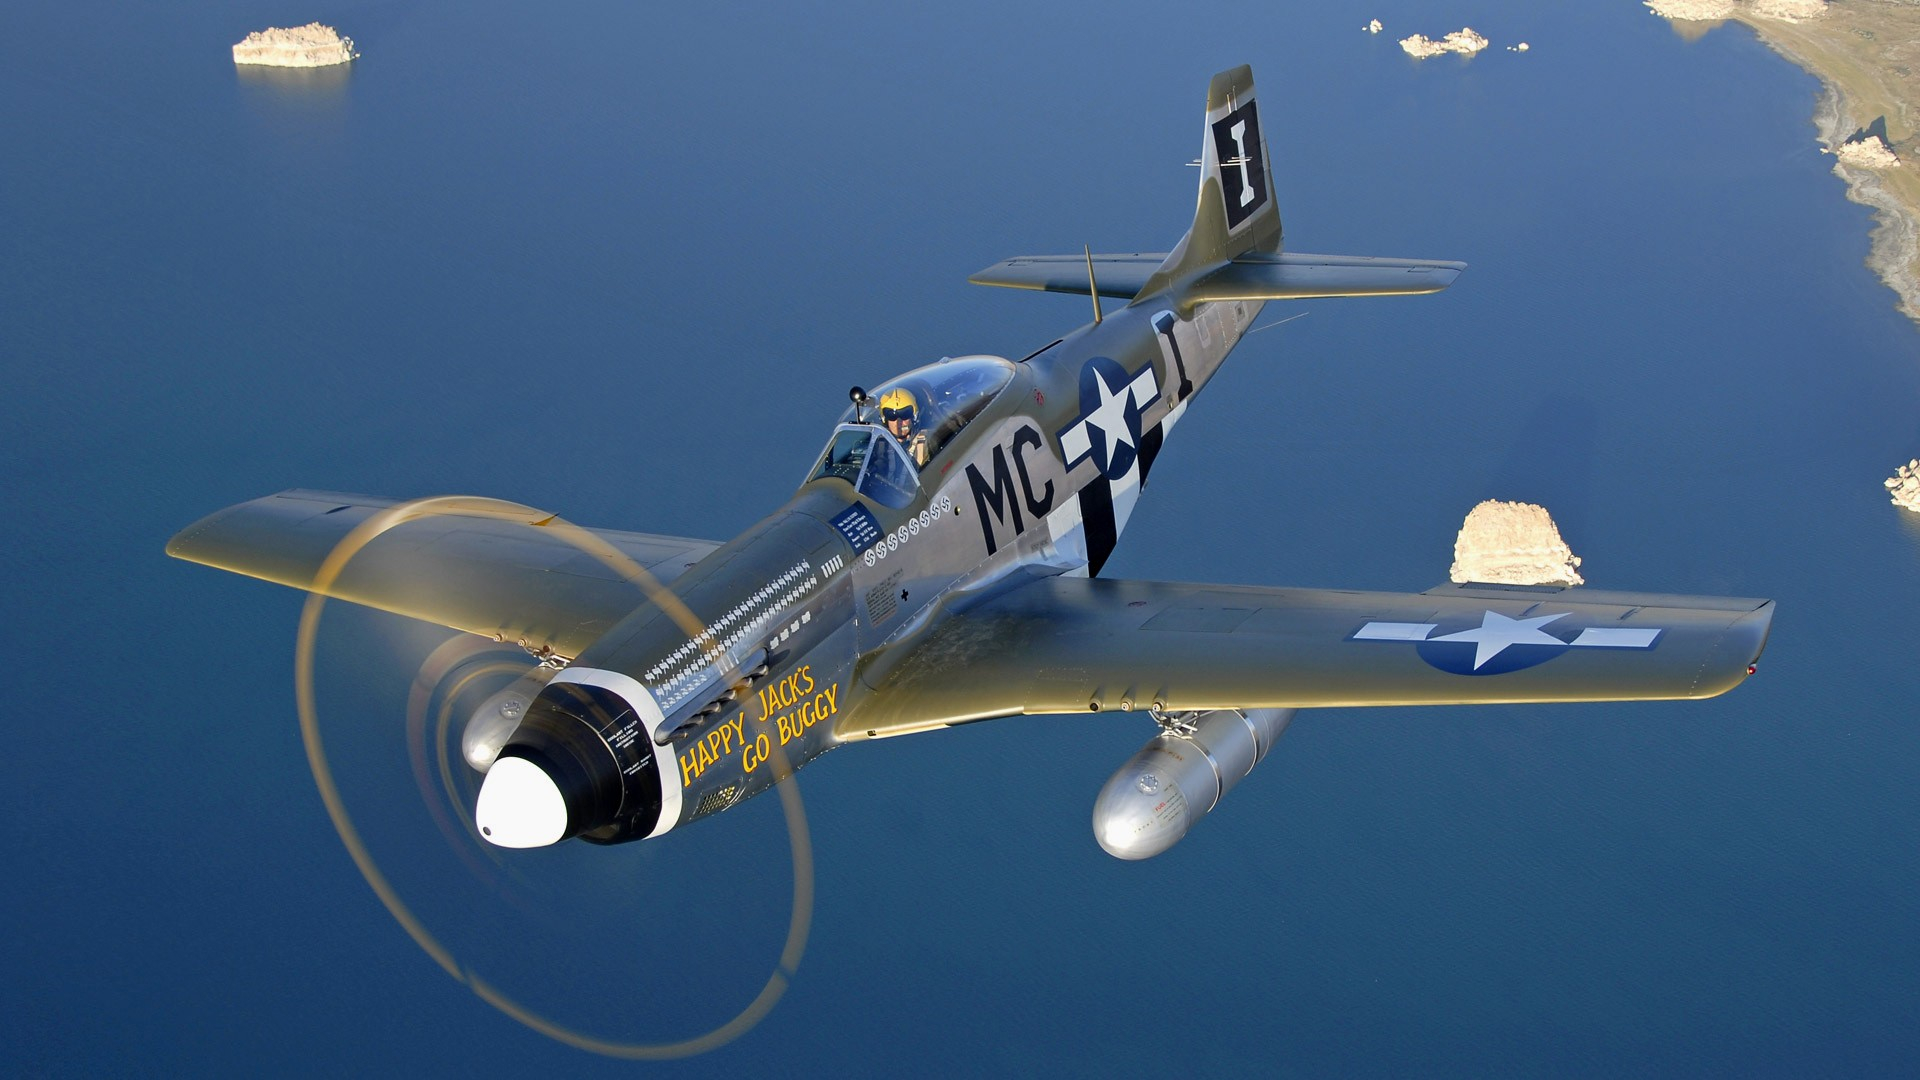 1920x1080 Aircraft Warbird P-51 Mustang wallpaper | | 118653